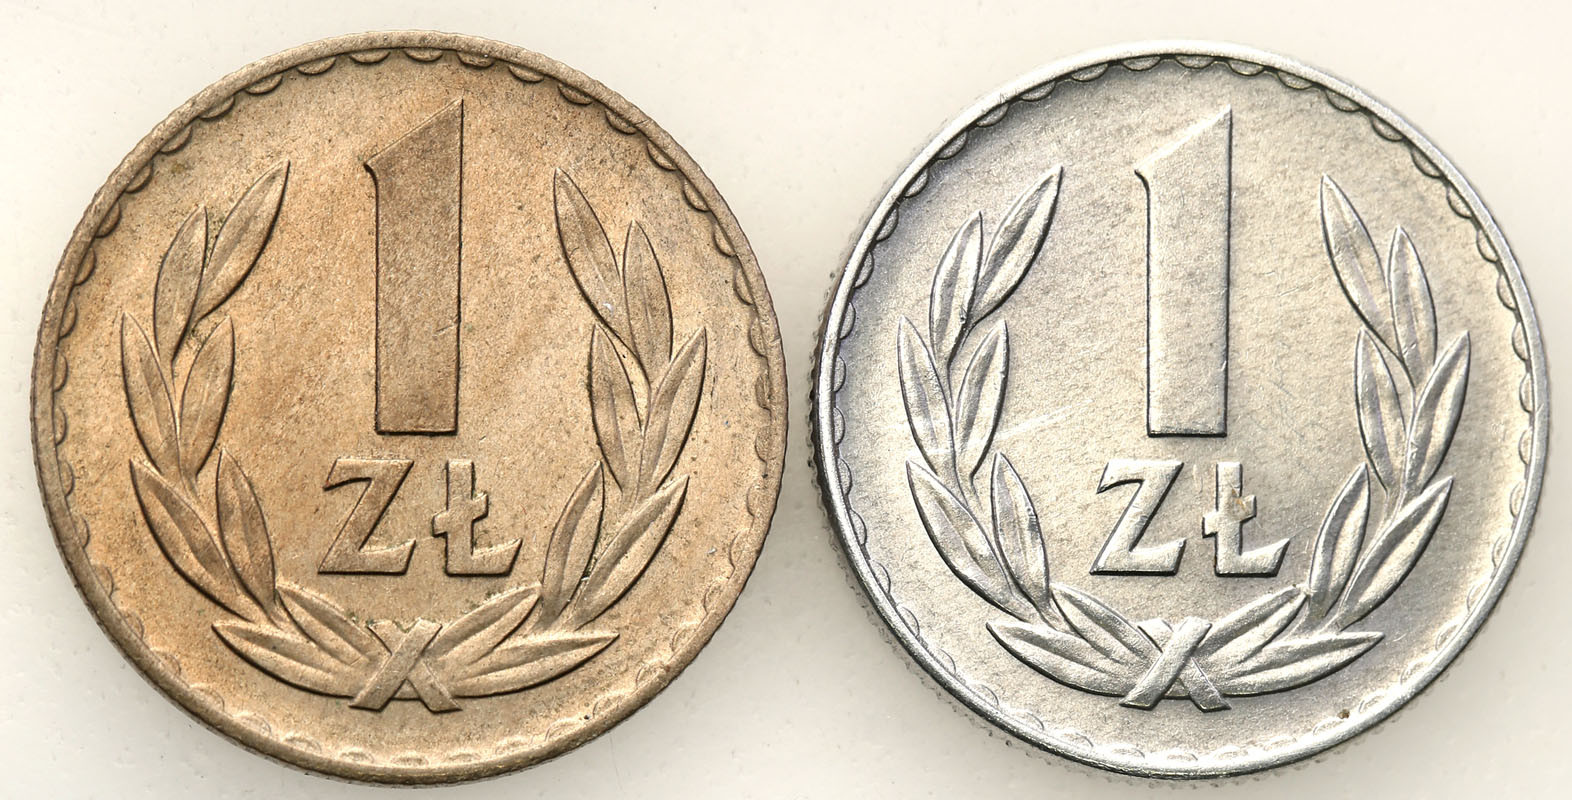 PRL. 1 złoty 1949 aluminium + miedzionikiel, zestaw 2 monet